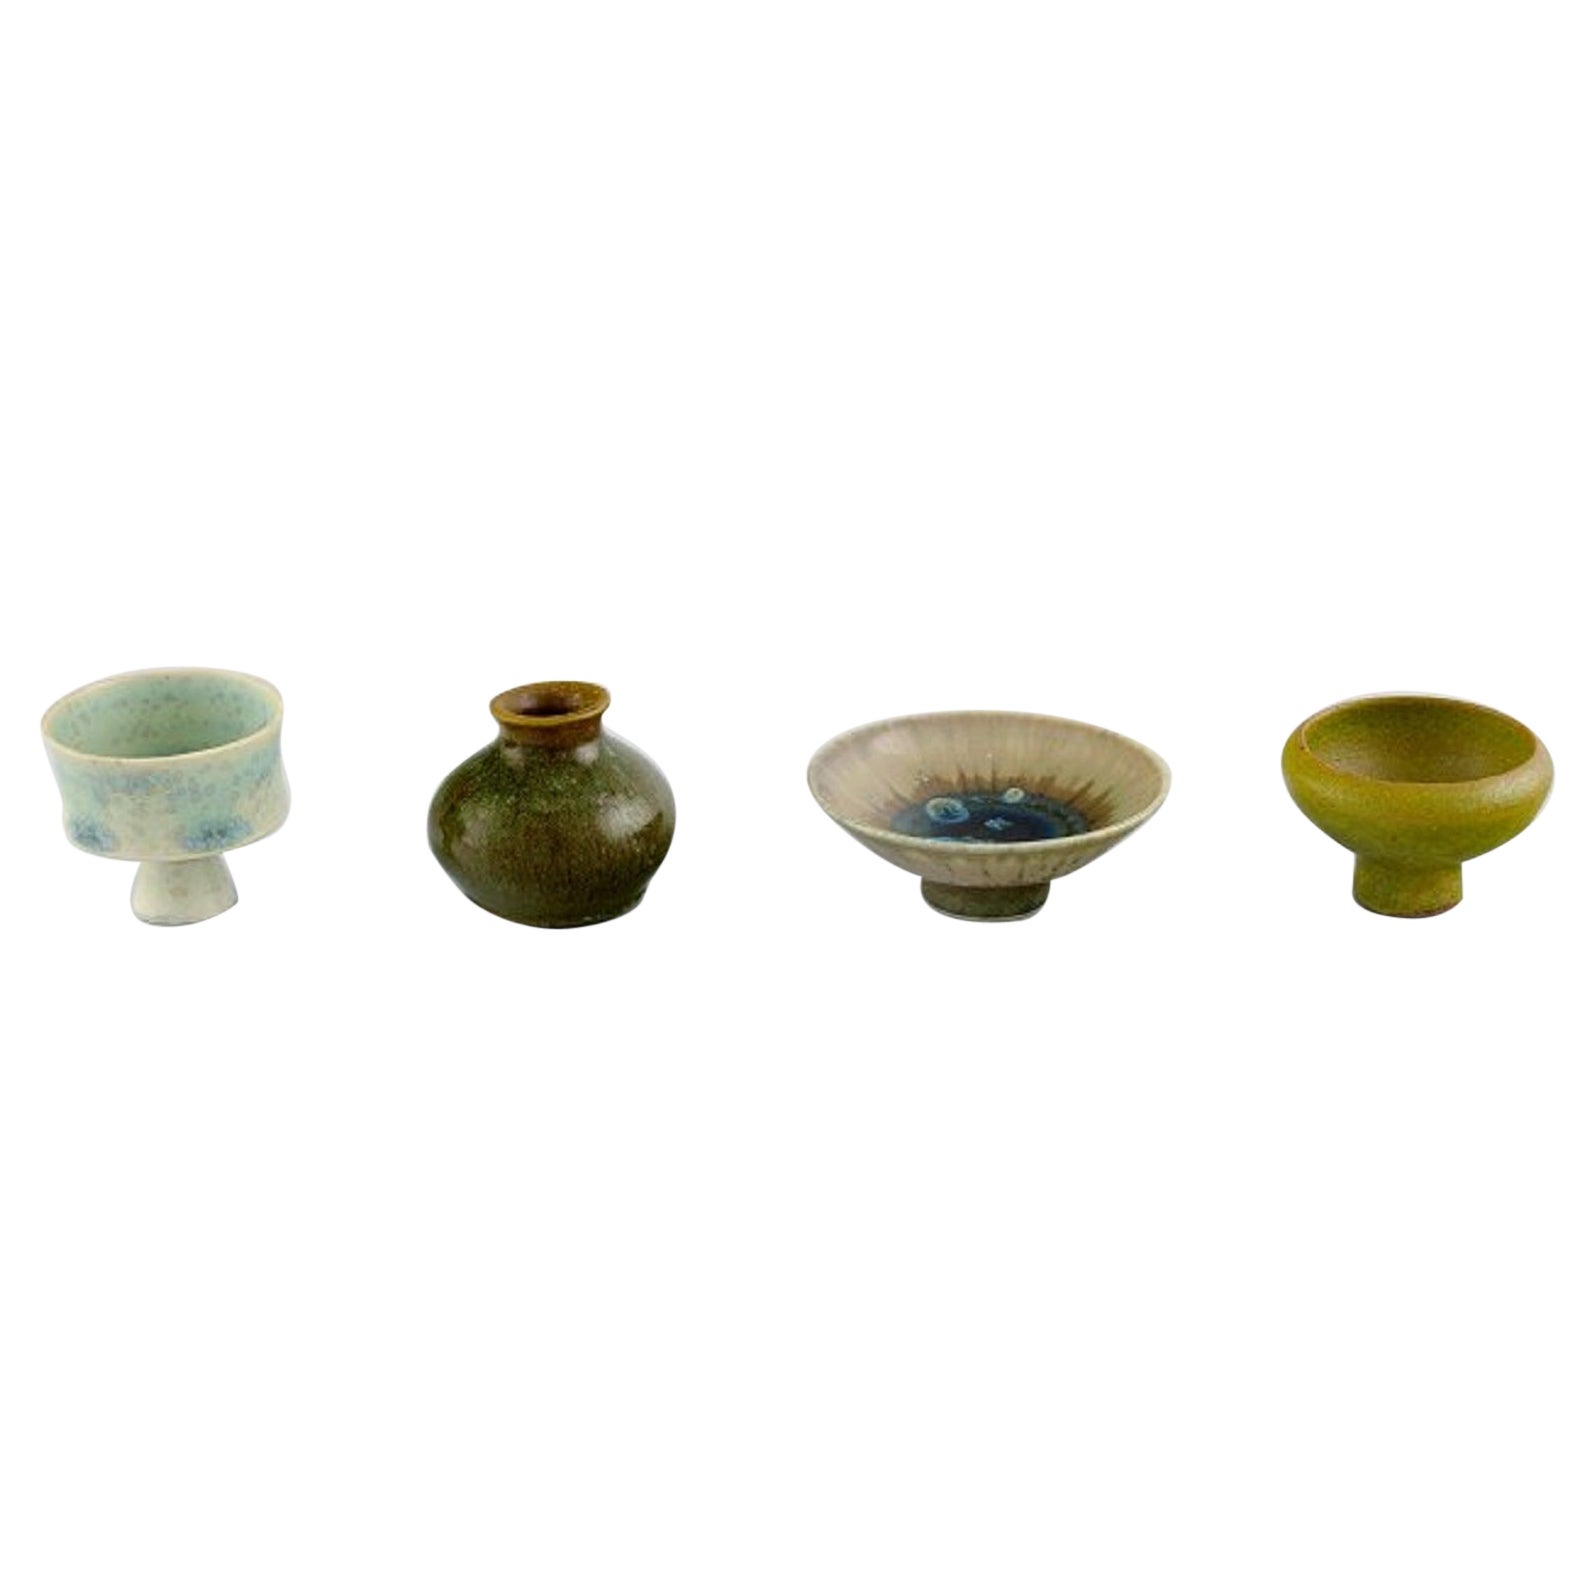 Swedish Studio Ceramics, Four Unique Miniature Vases in Glazed Stoneware